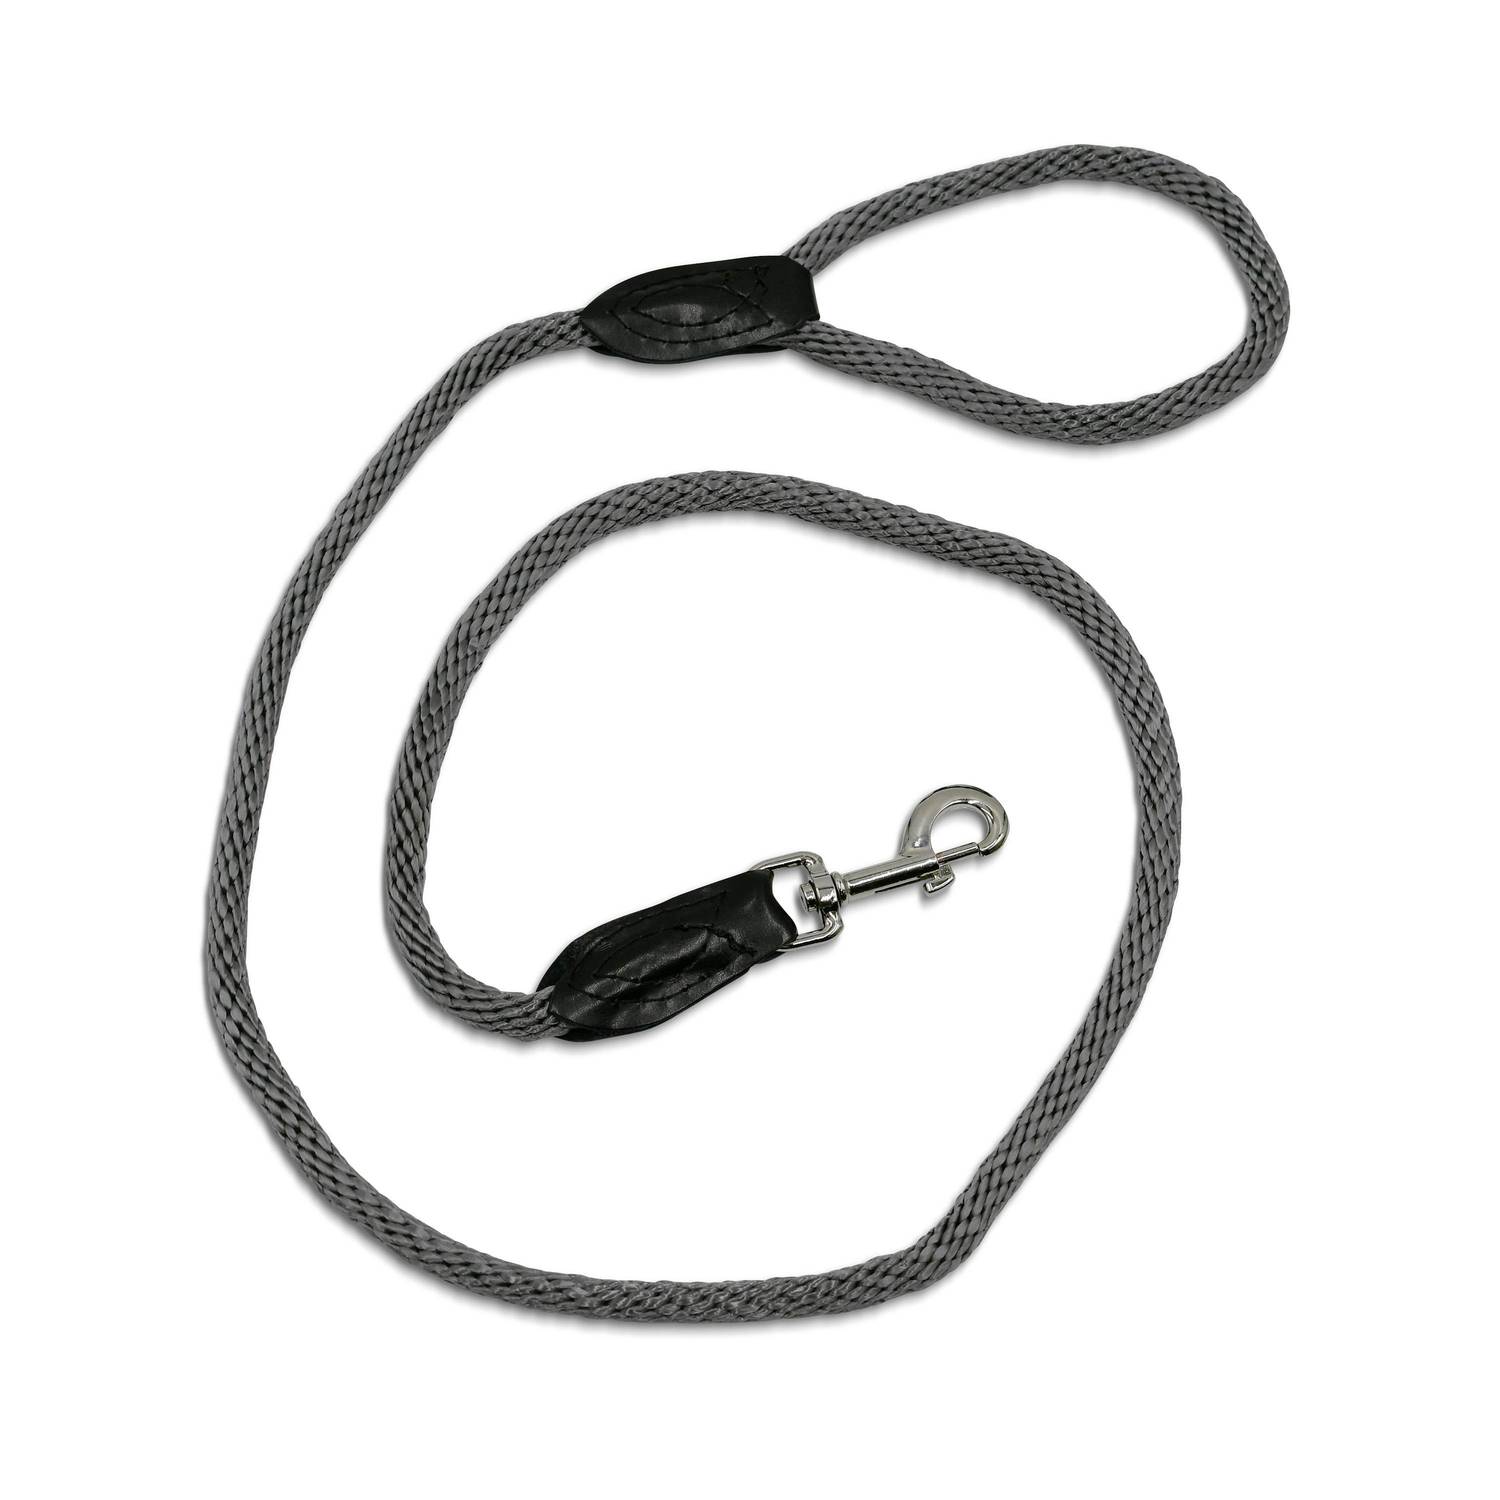 130 cm Nylon-Hundeleine in Taupe + verstellbares Halsband in Taupe für kleine und mittlere Hunde, Größe S und M Photo2